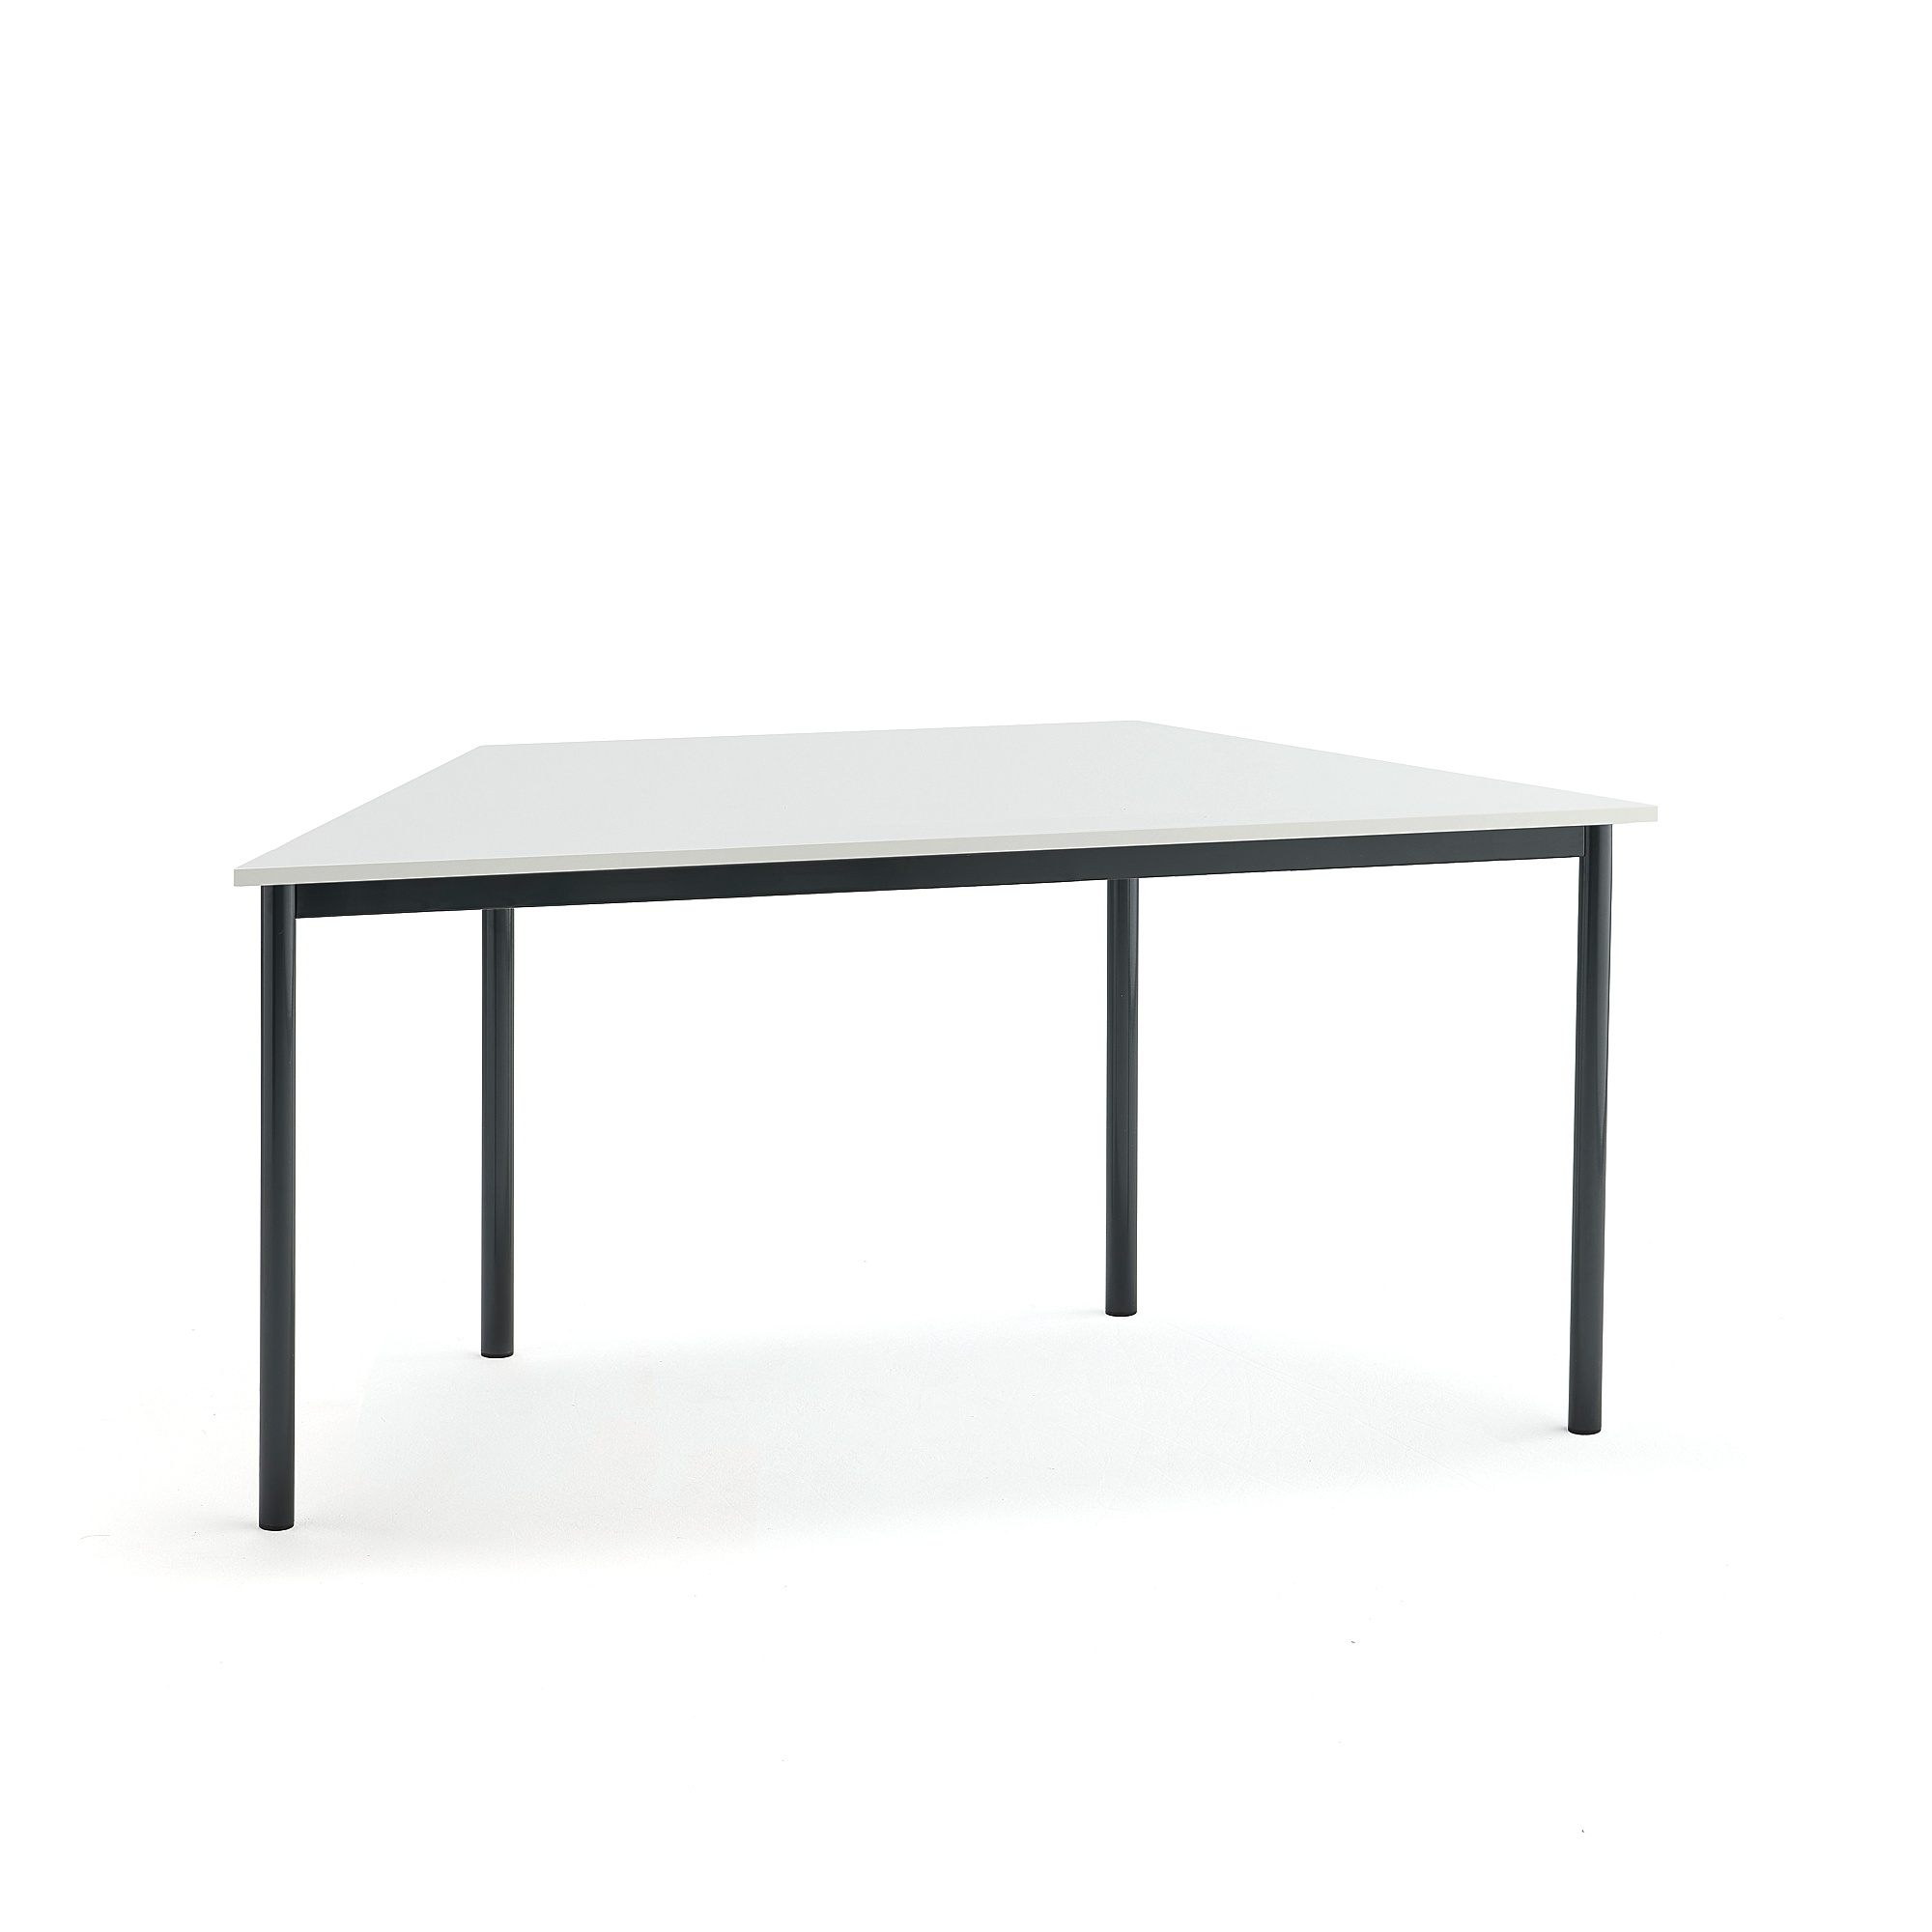 Stůl BORÅS TRAPETS, 1600x800x720 mm, antracitově šedé nohy, HPL deska, bílá